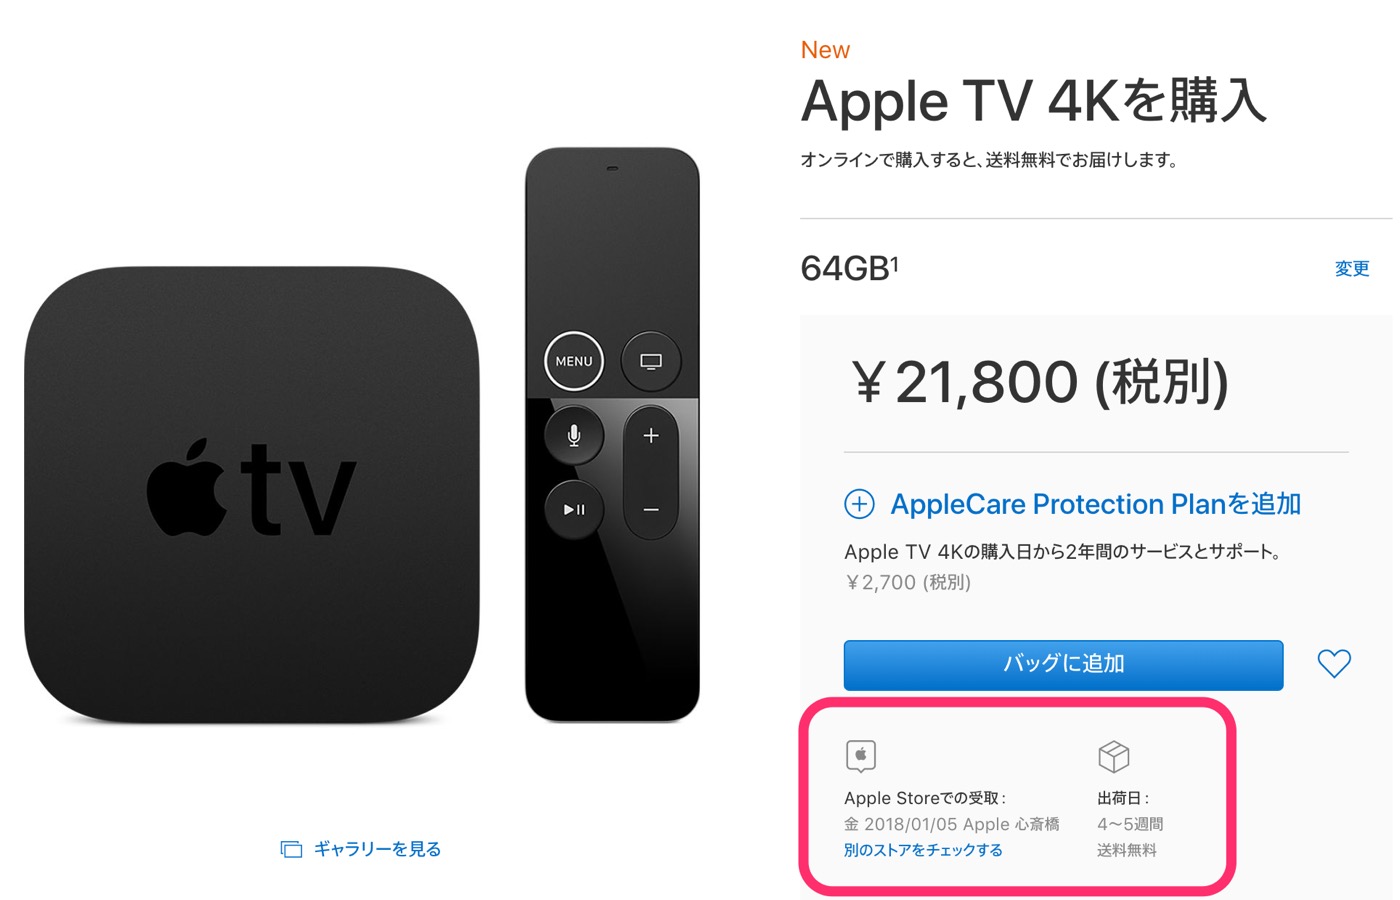 ｢Apple TV 4K｣の64GBモデルがなぜか品不足に − 公式ストアでの出荷予定日は4〜5週